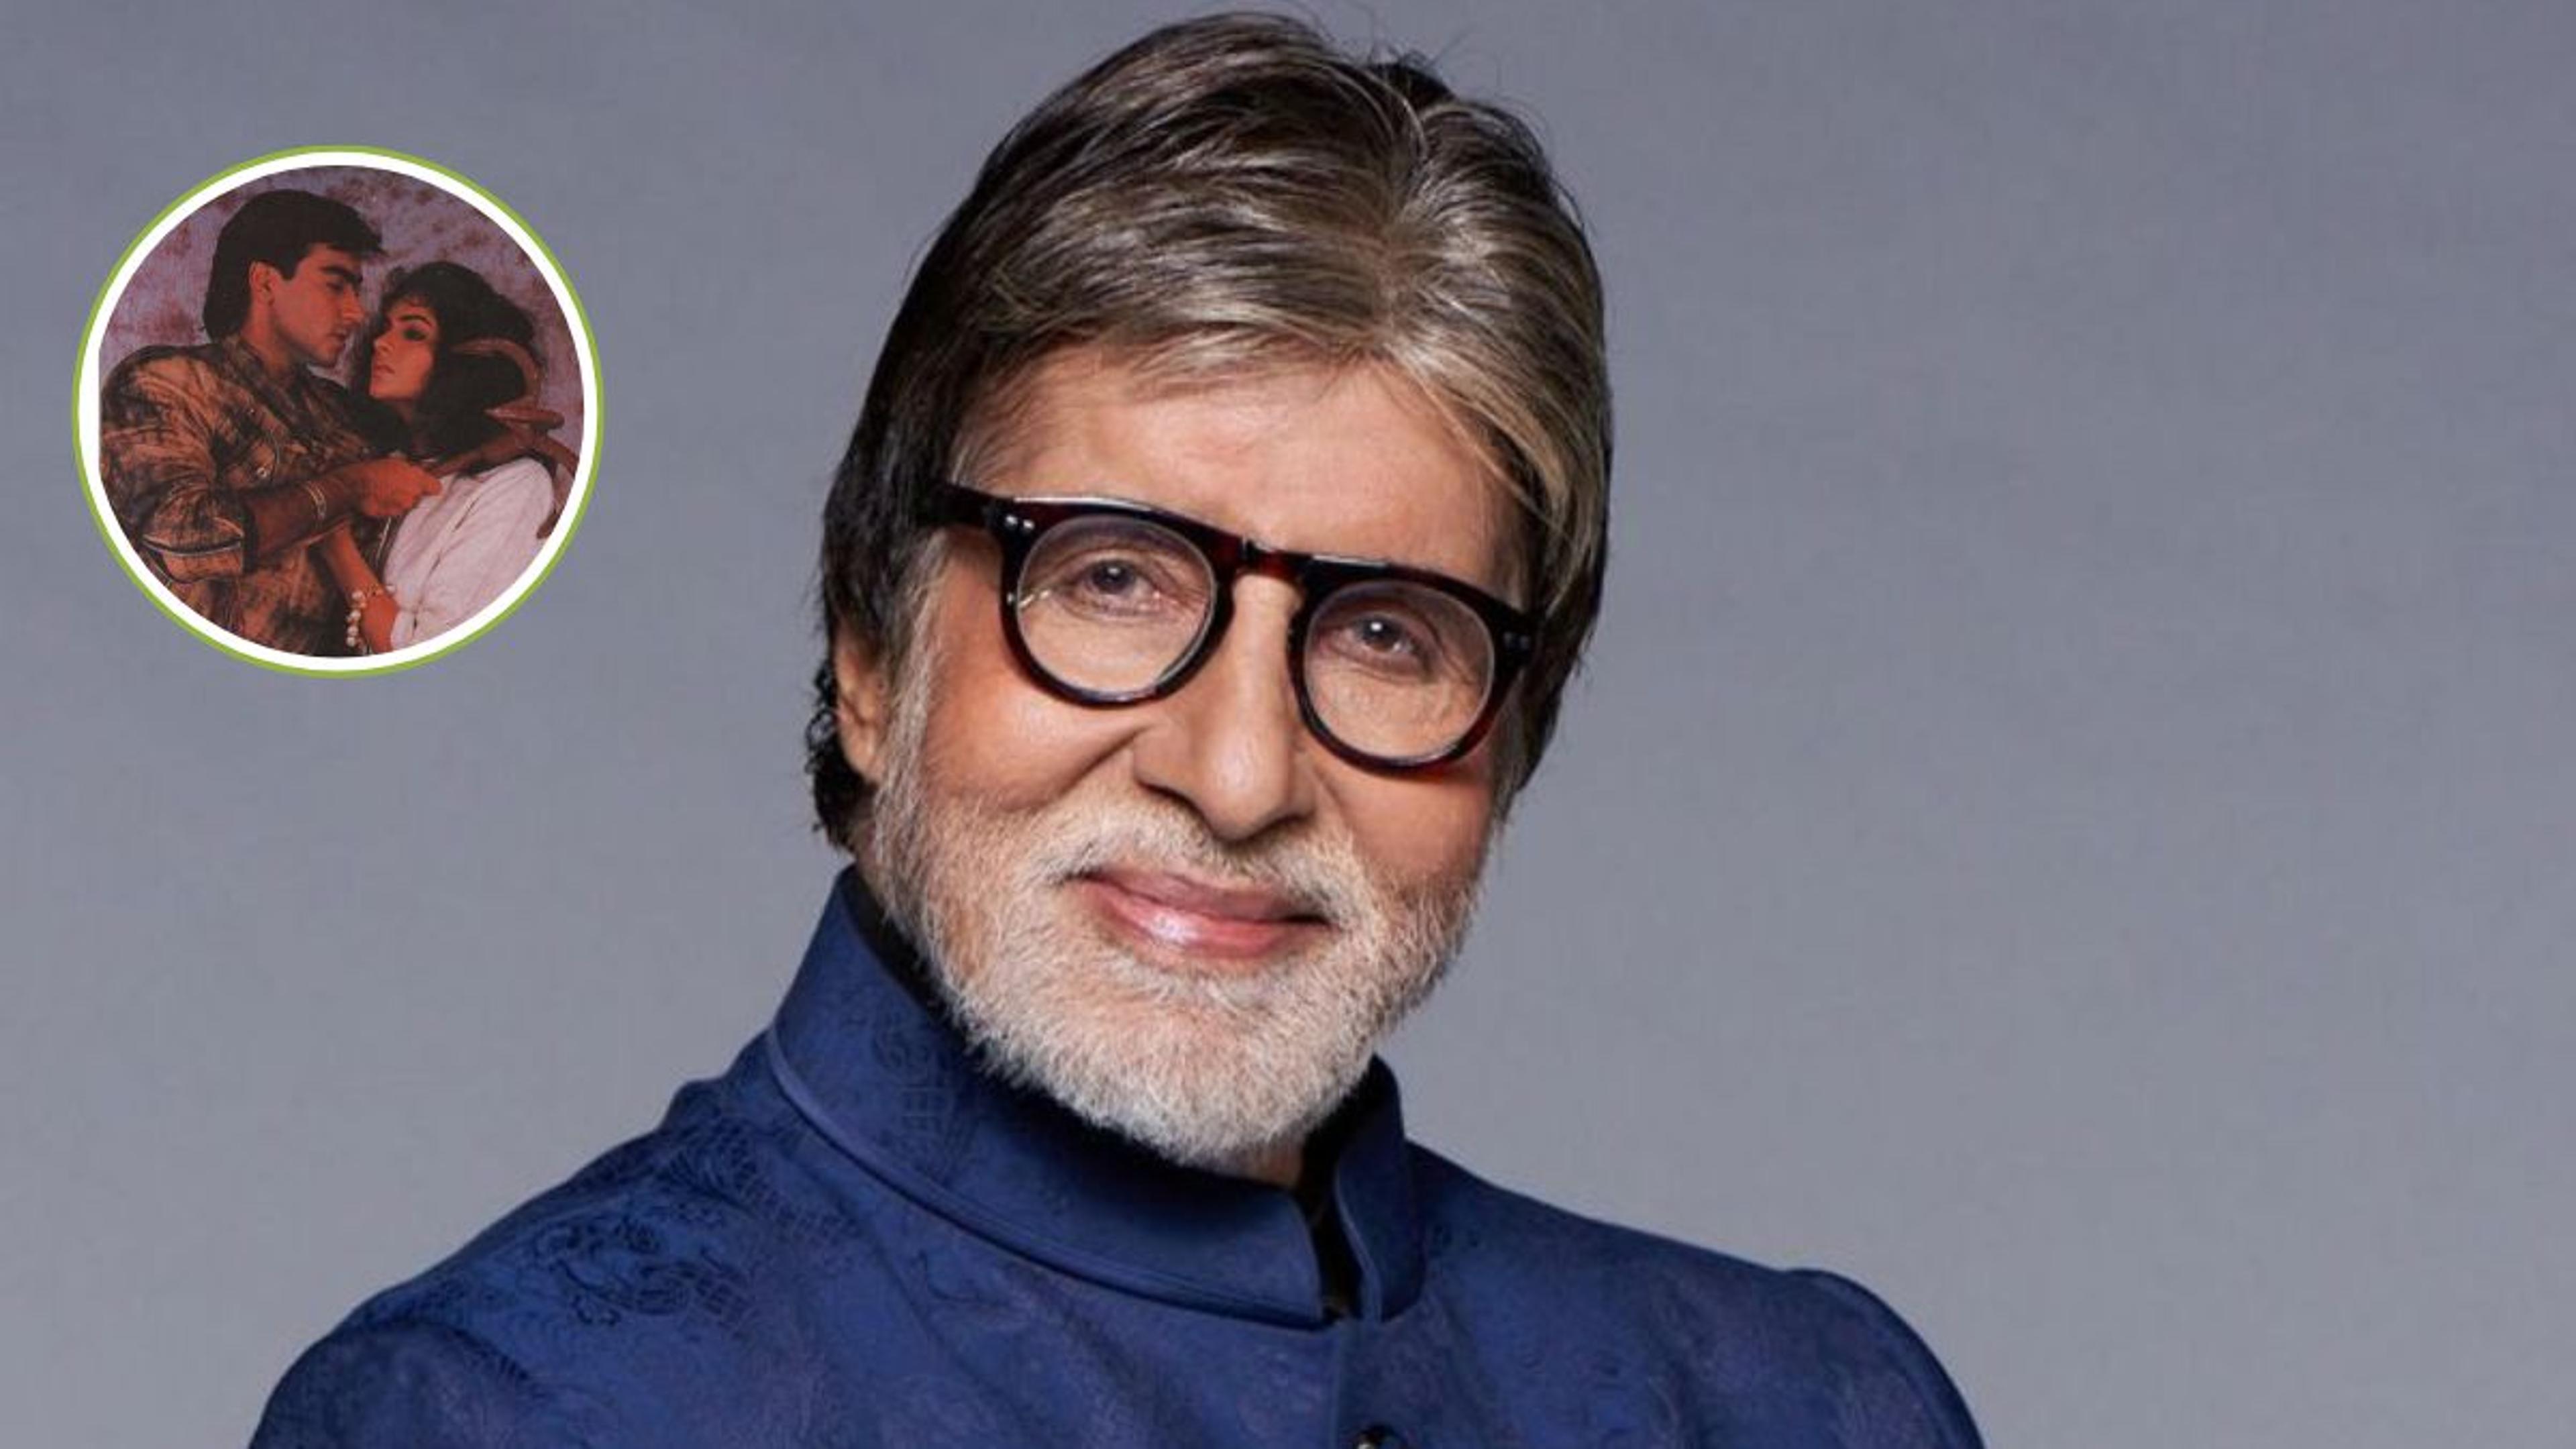 Amitabh Bachchan जब अजय देवगन की एक्ट्रेस को उठाकर ग्राउंड में घूमे, इस बात का
मना रहे थे जश्न